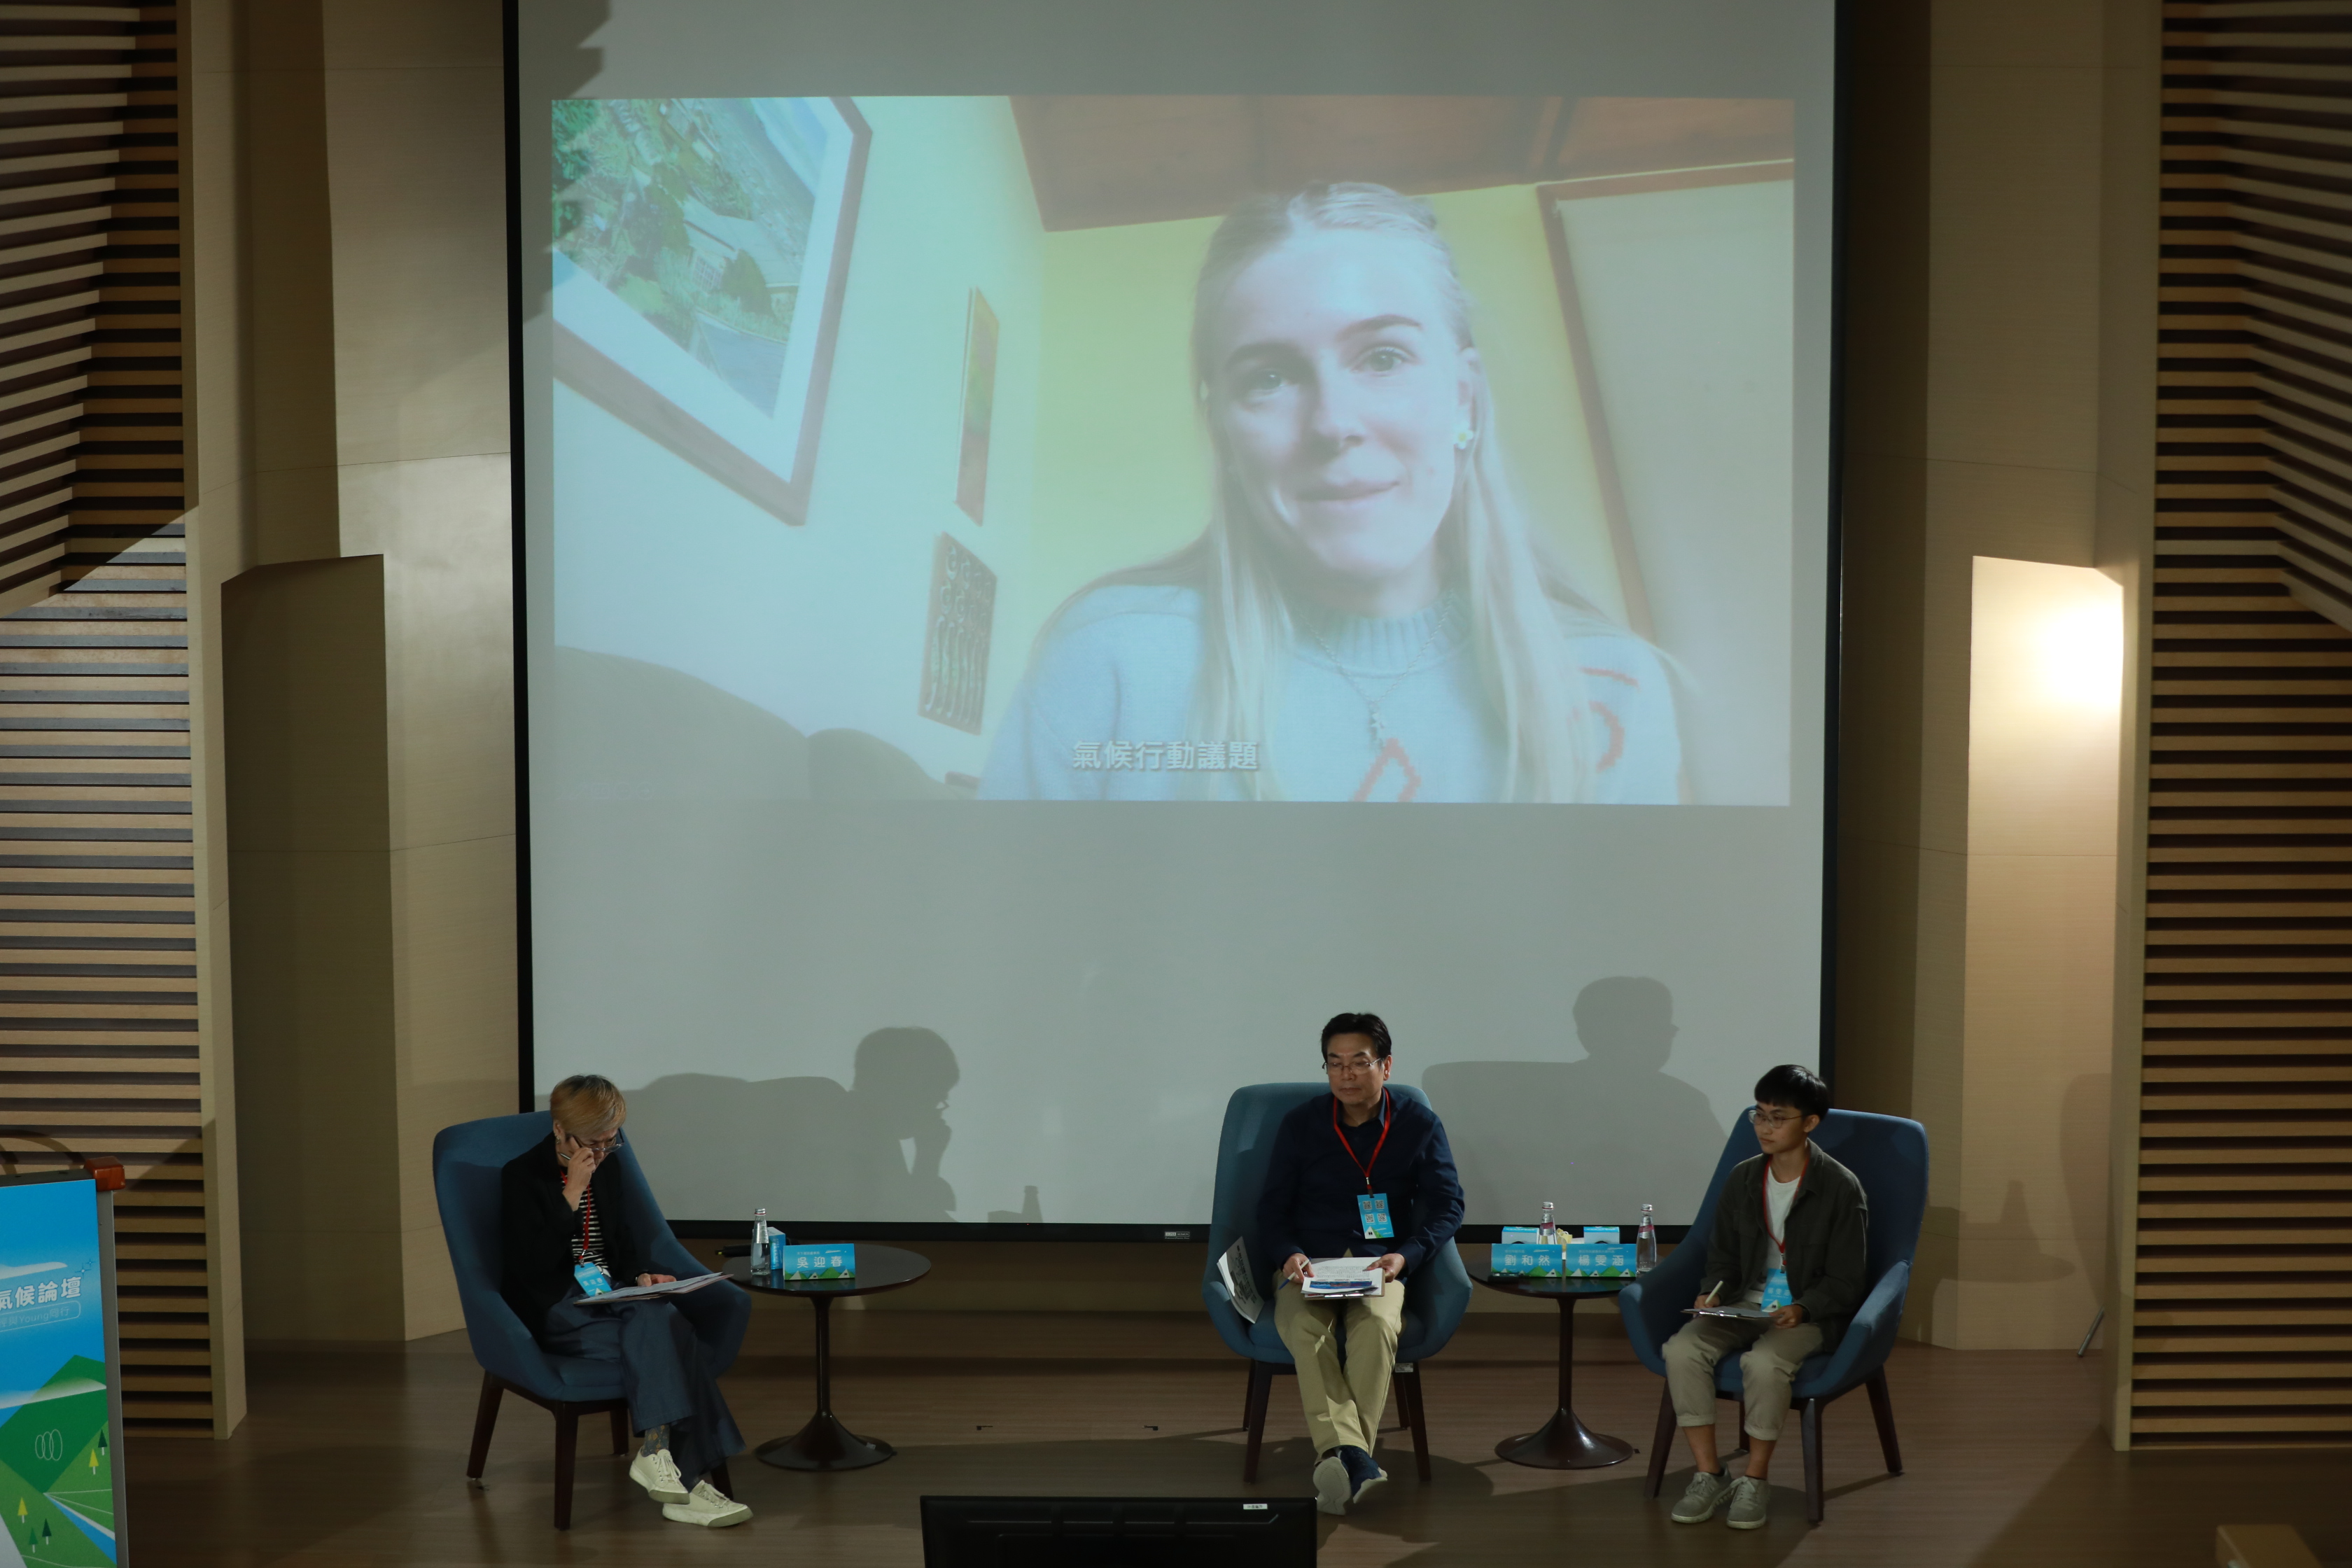 4.紐西蘭最年輕議員Sophie Handford以預錄影片方式參與論壇，分享實踐氣候行動時，需有足夠的執行力及建立集體的共識